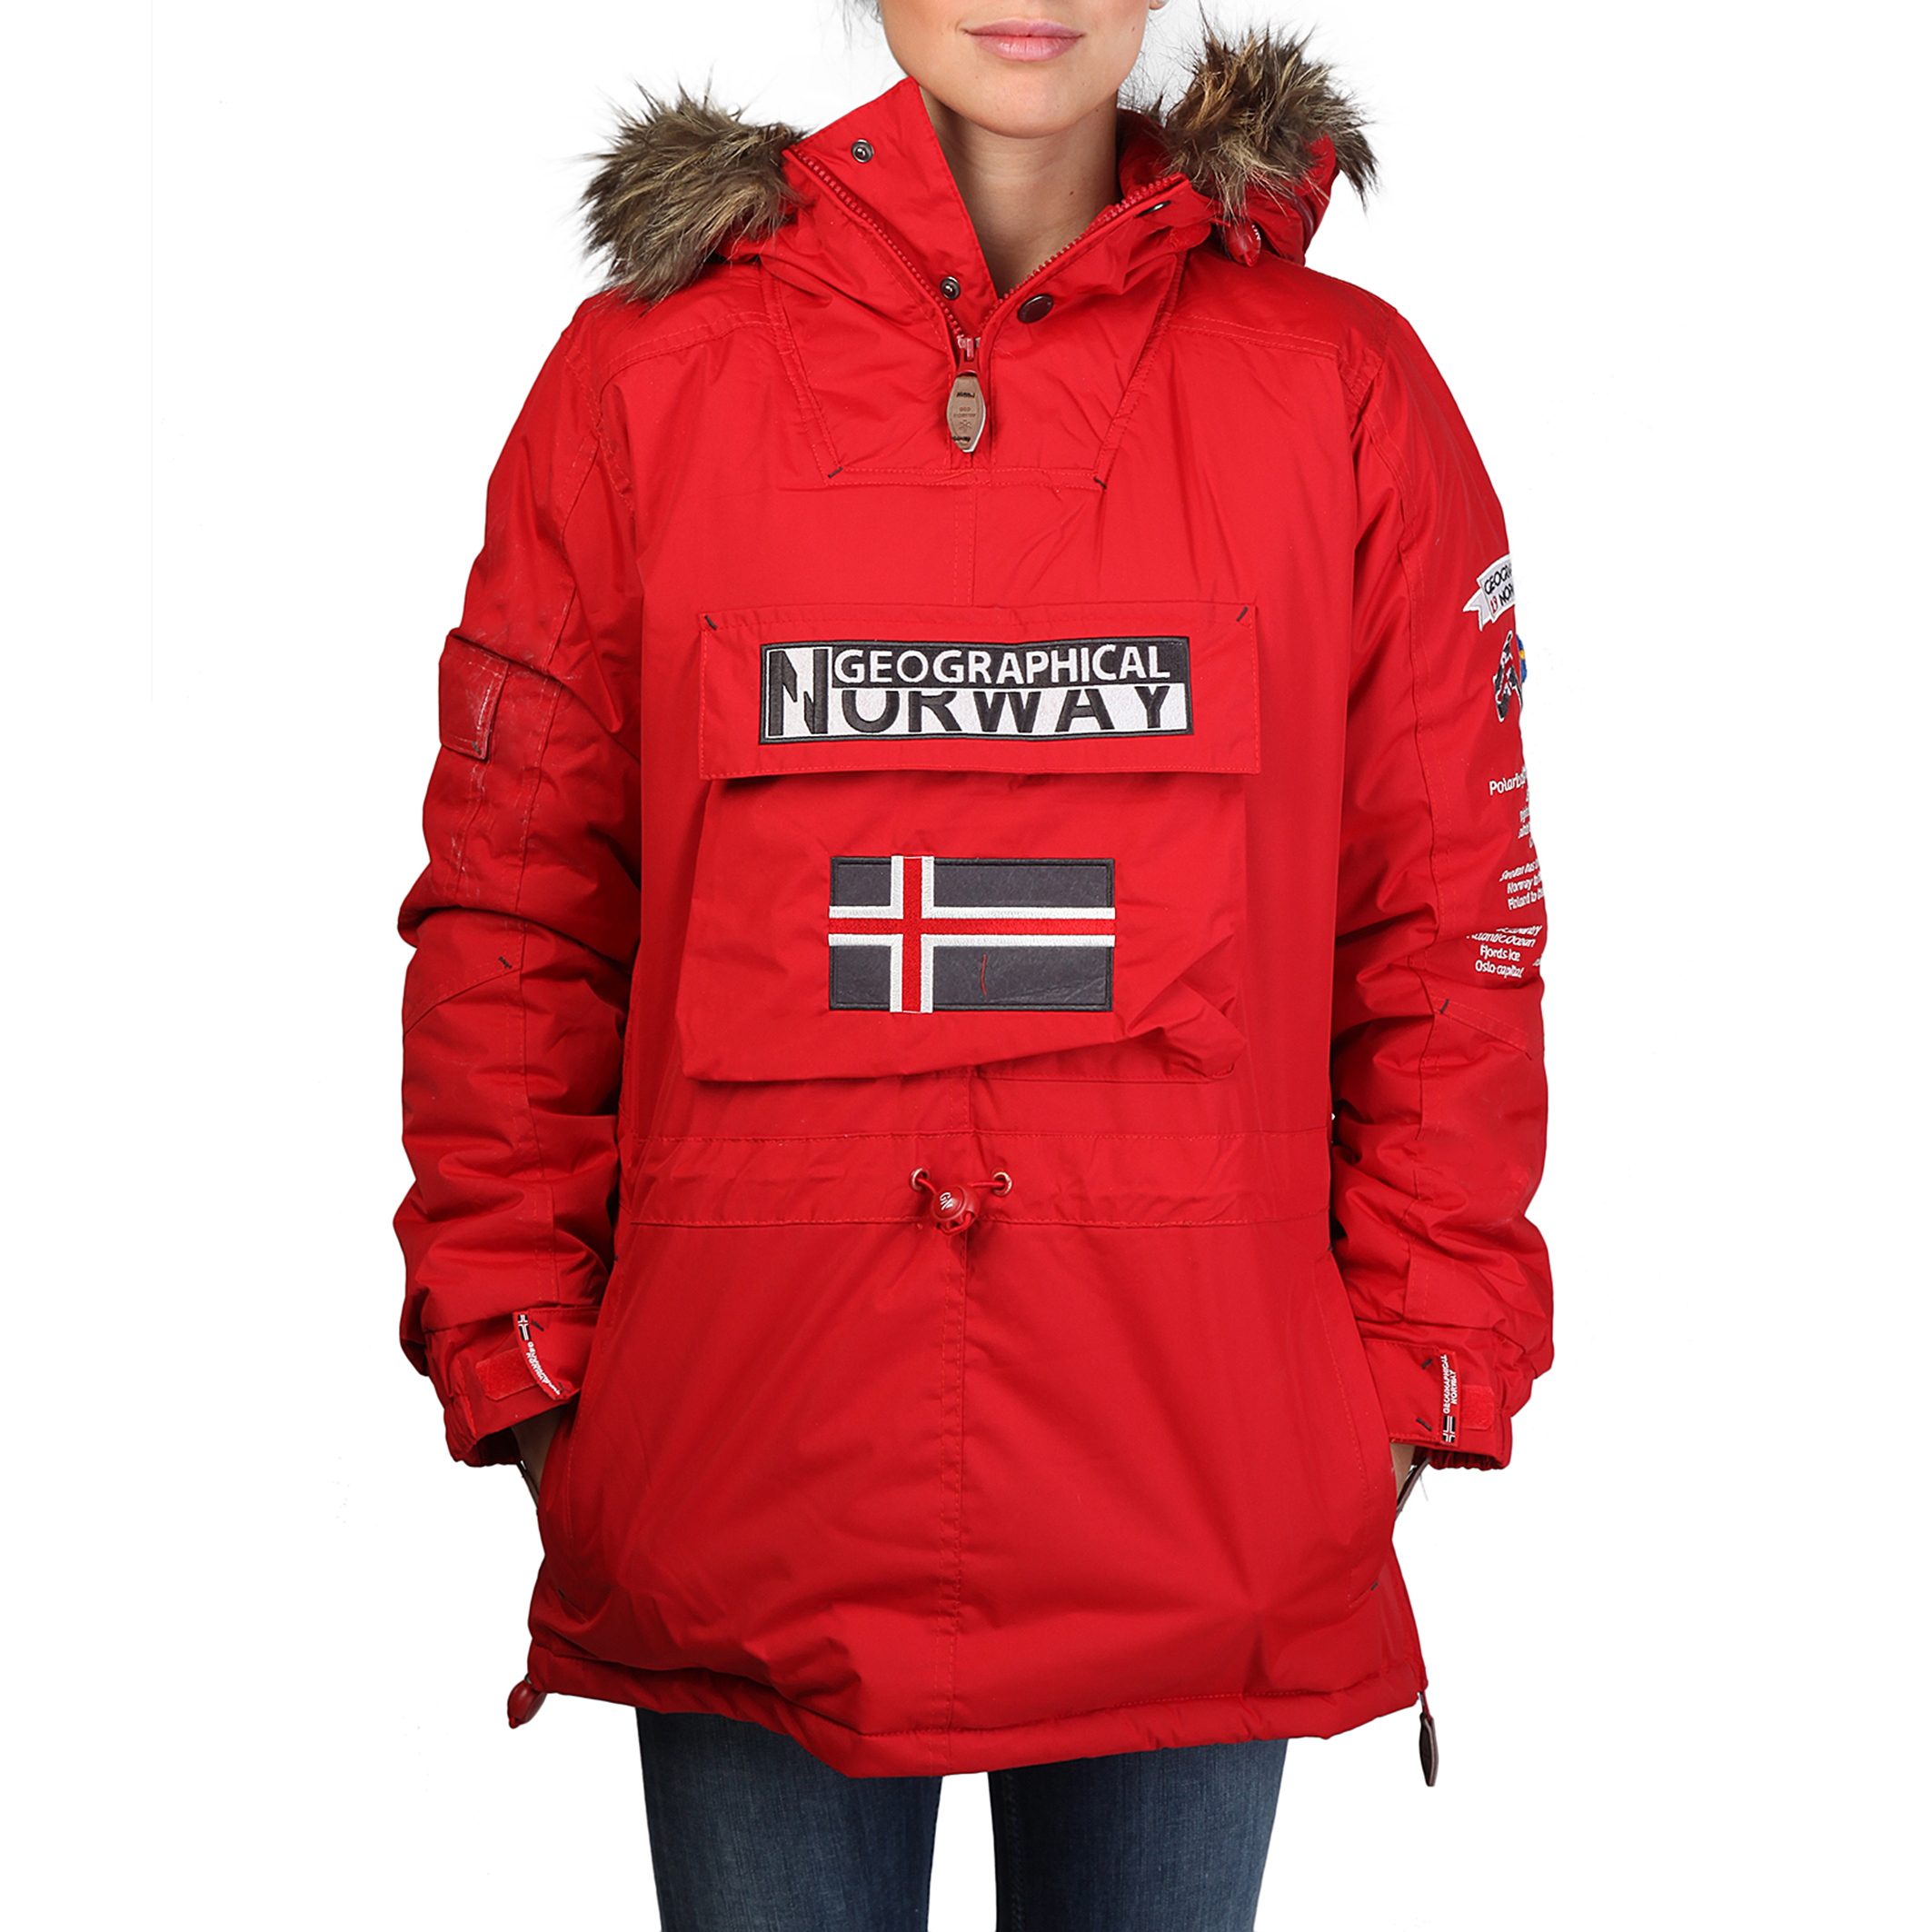 abrigo norway rojo